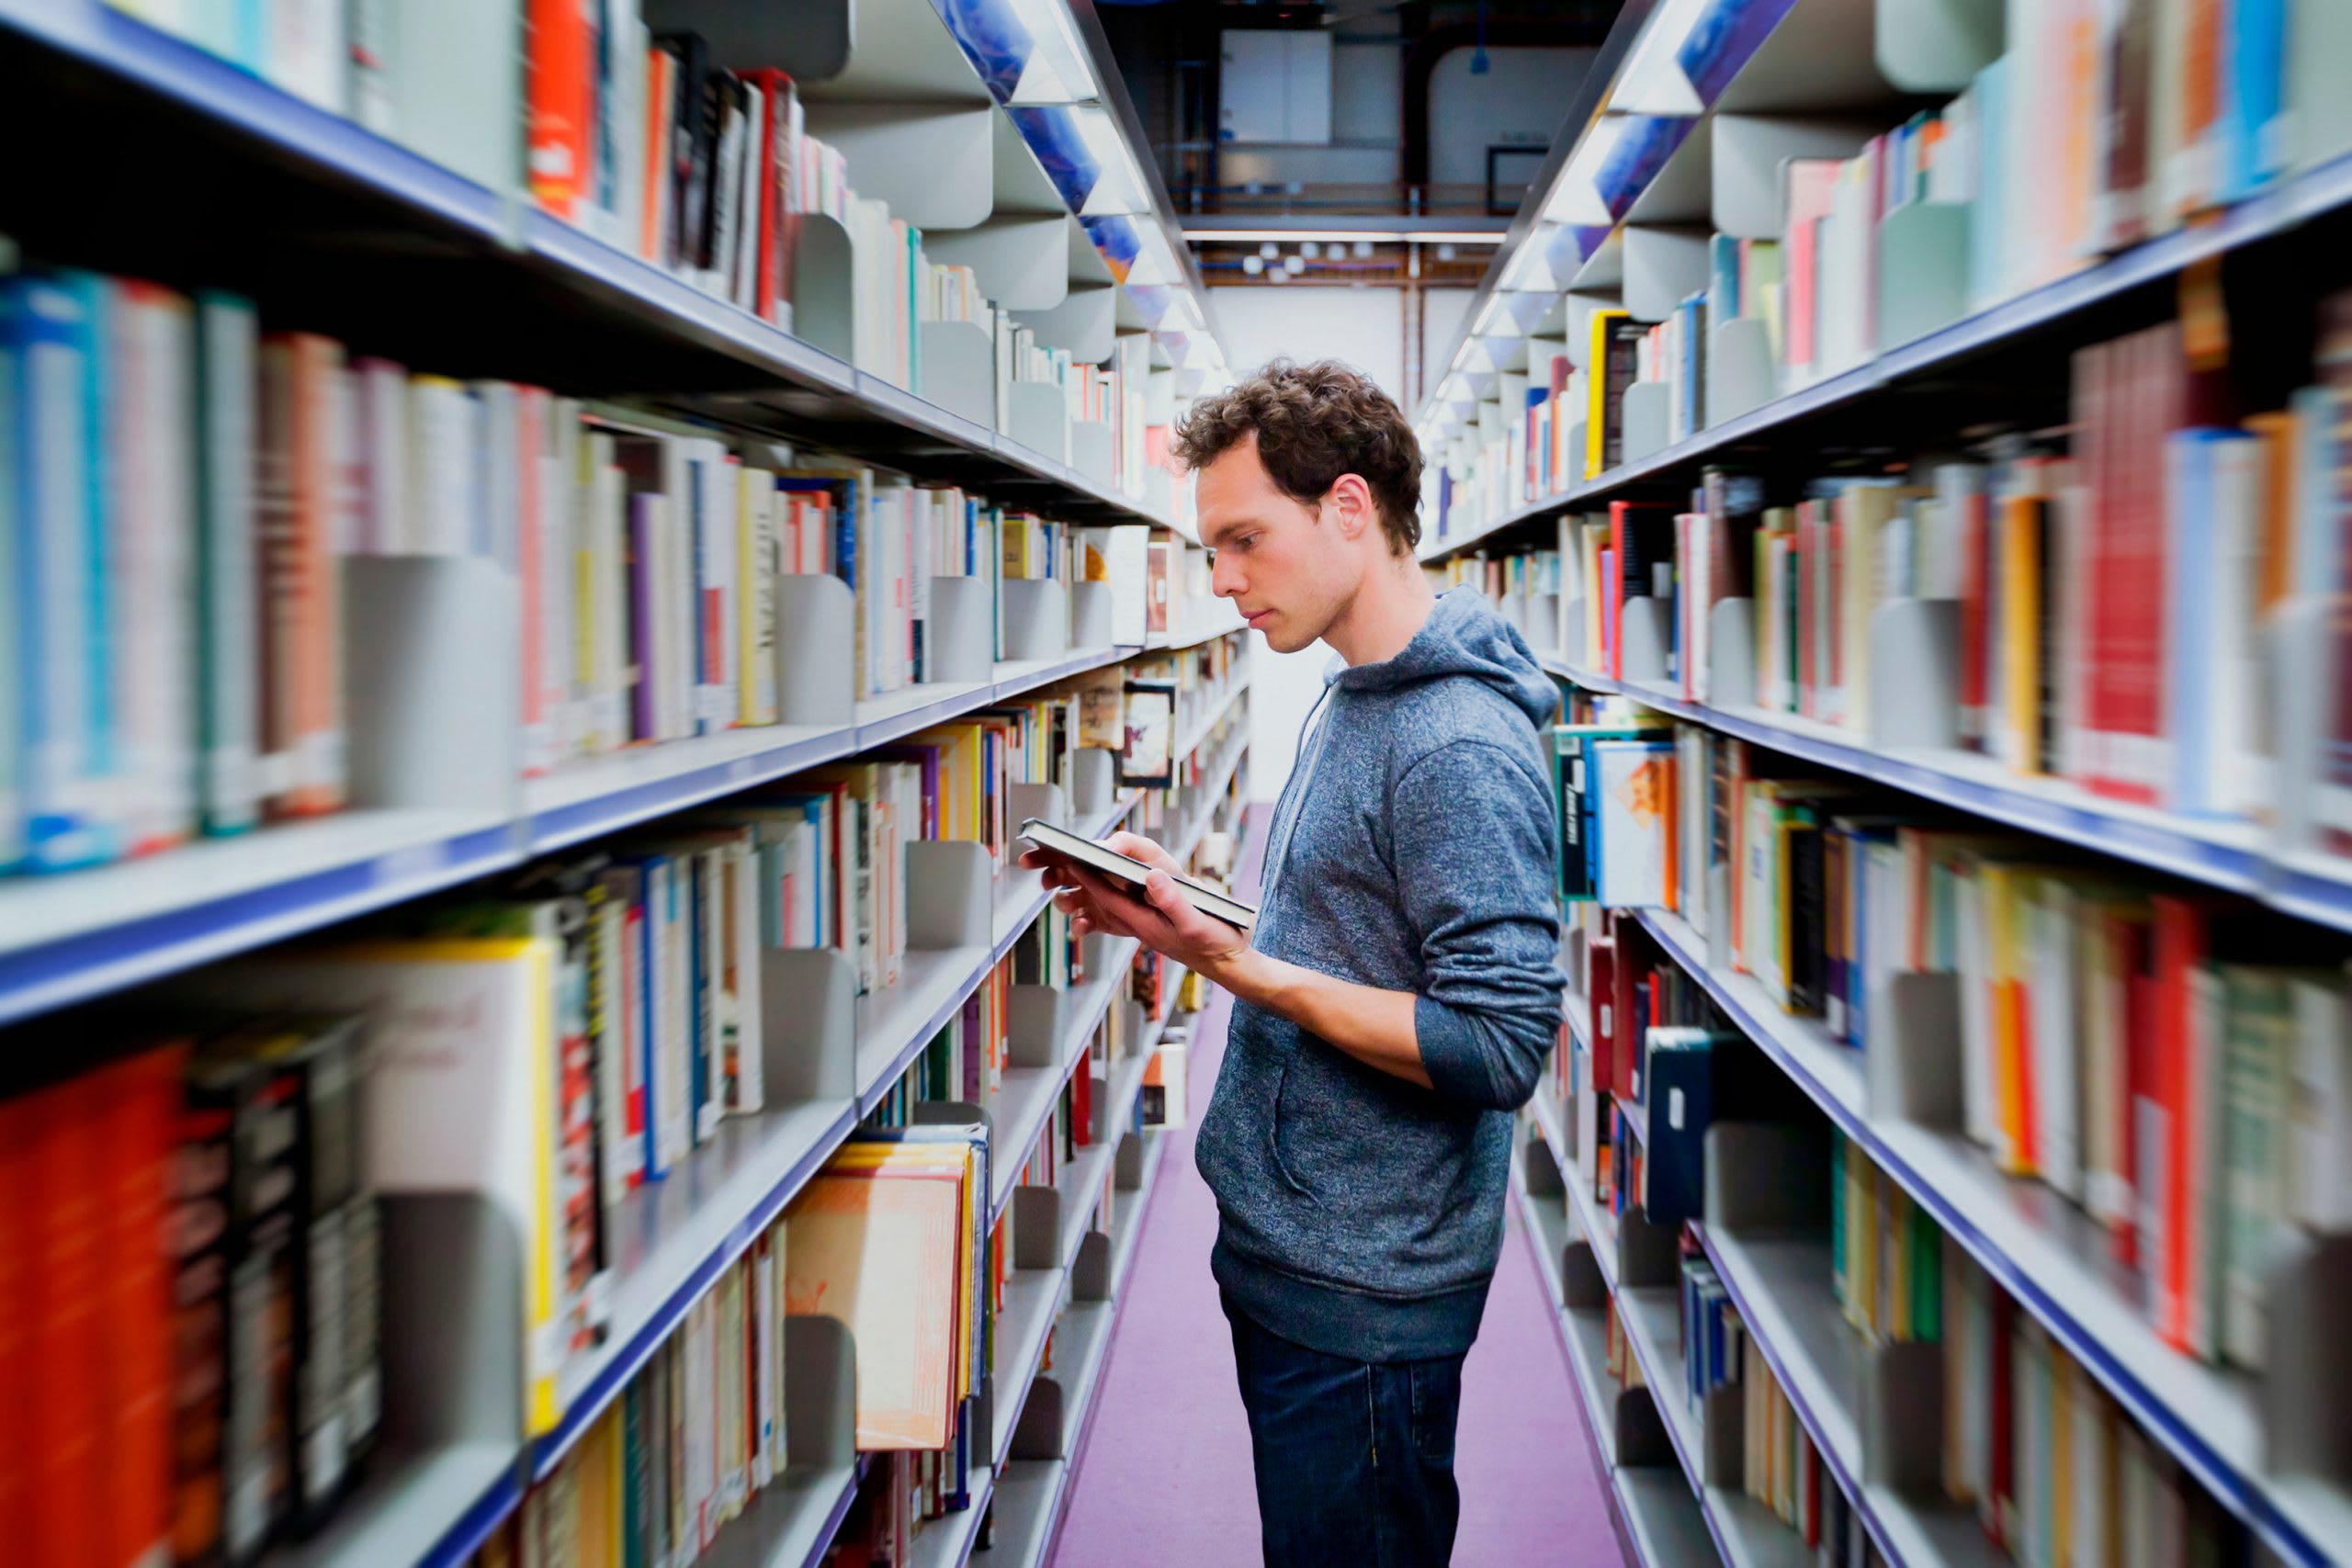 Отличное место, чтобы сфокусироваться на учебе: в чешской библиотеке можно найти редкие литературные издания. Источник: Shutterstock 